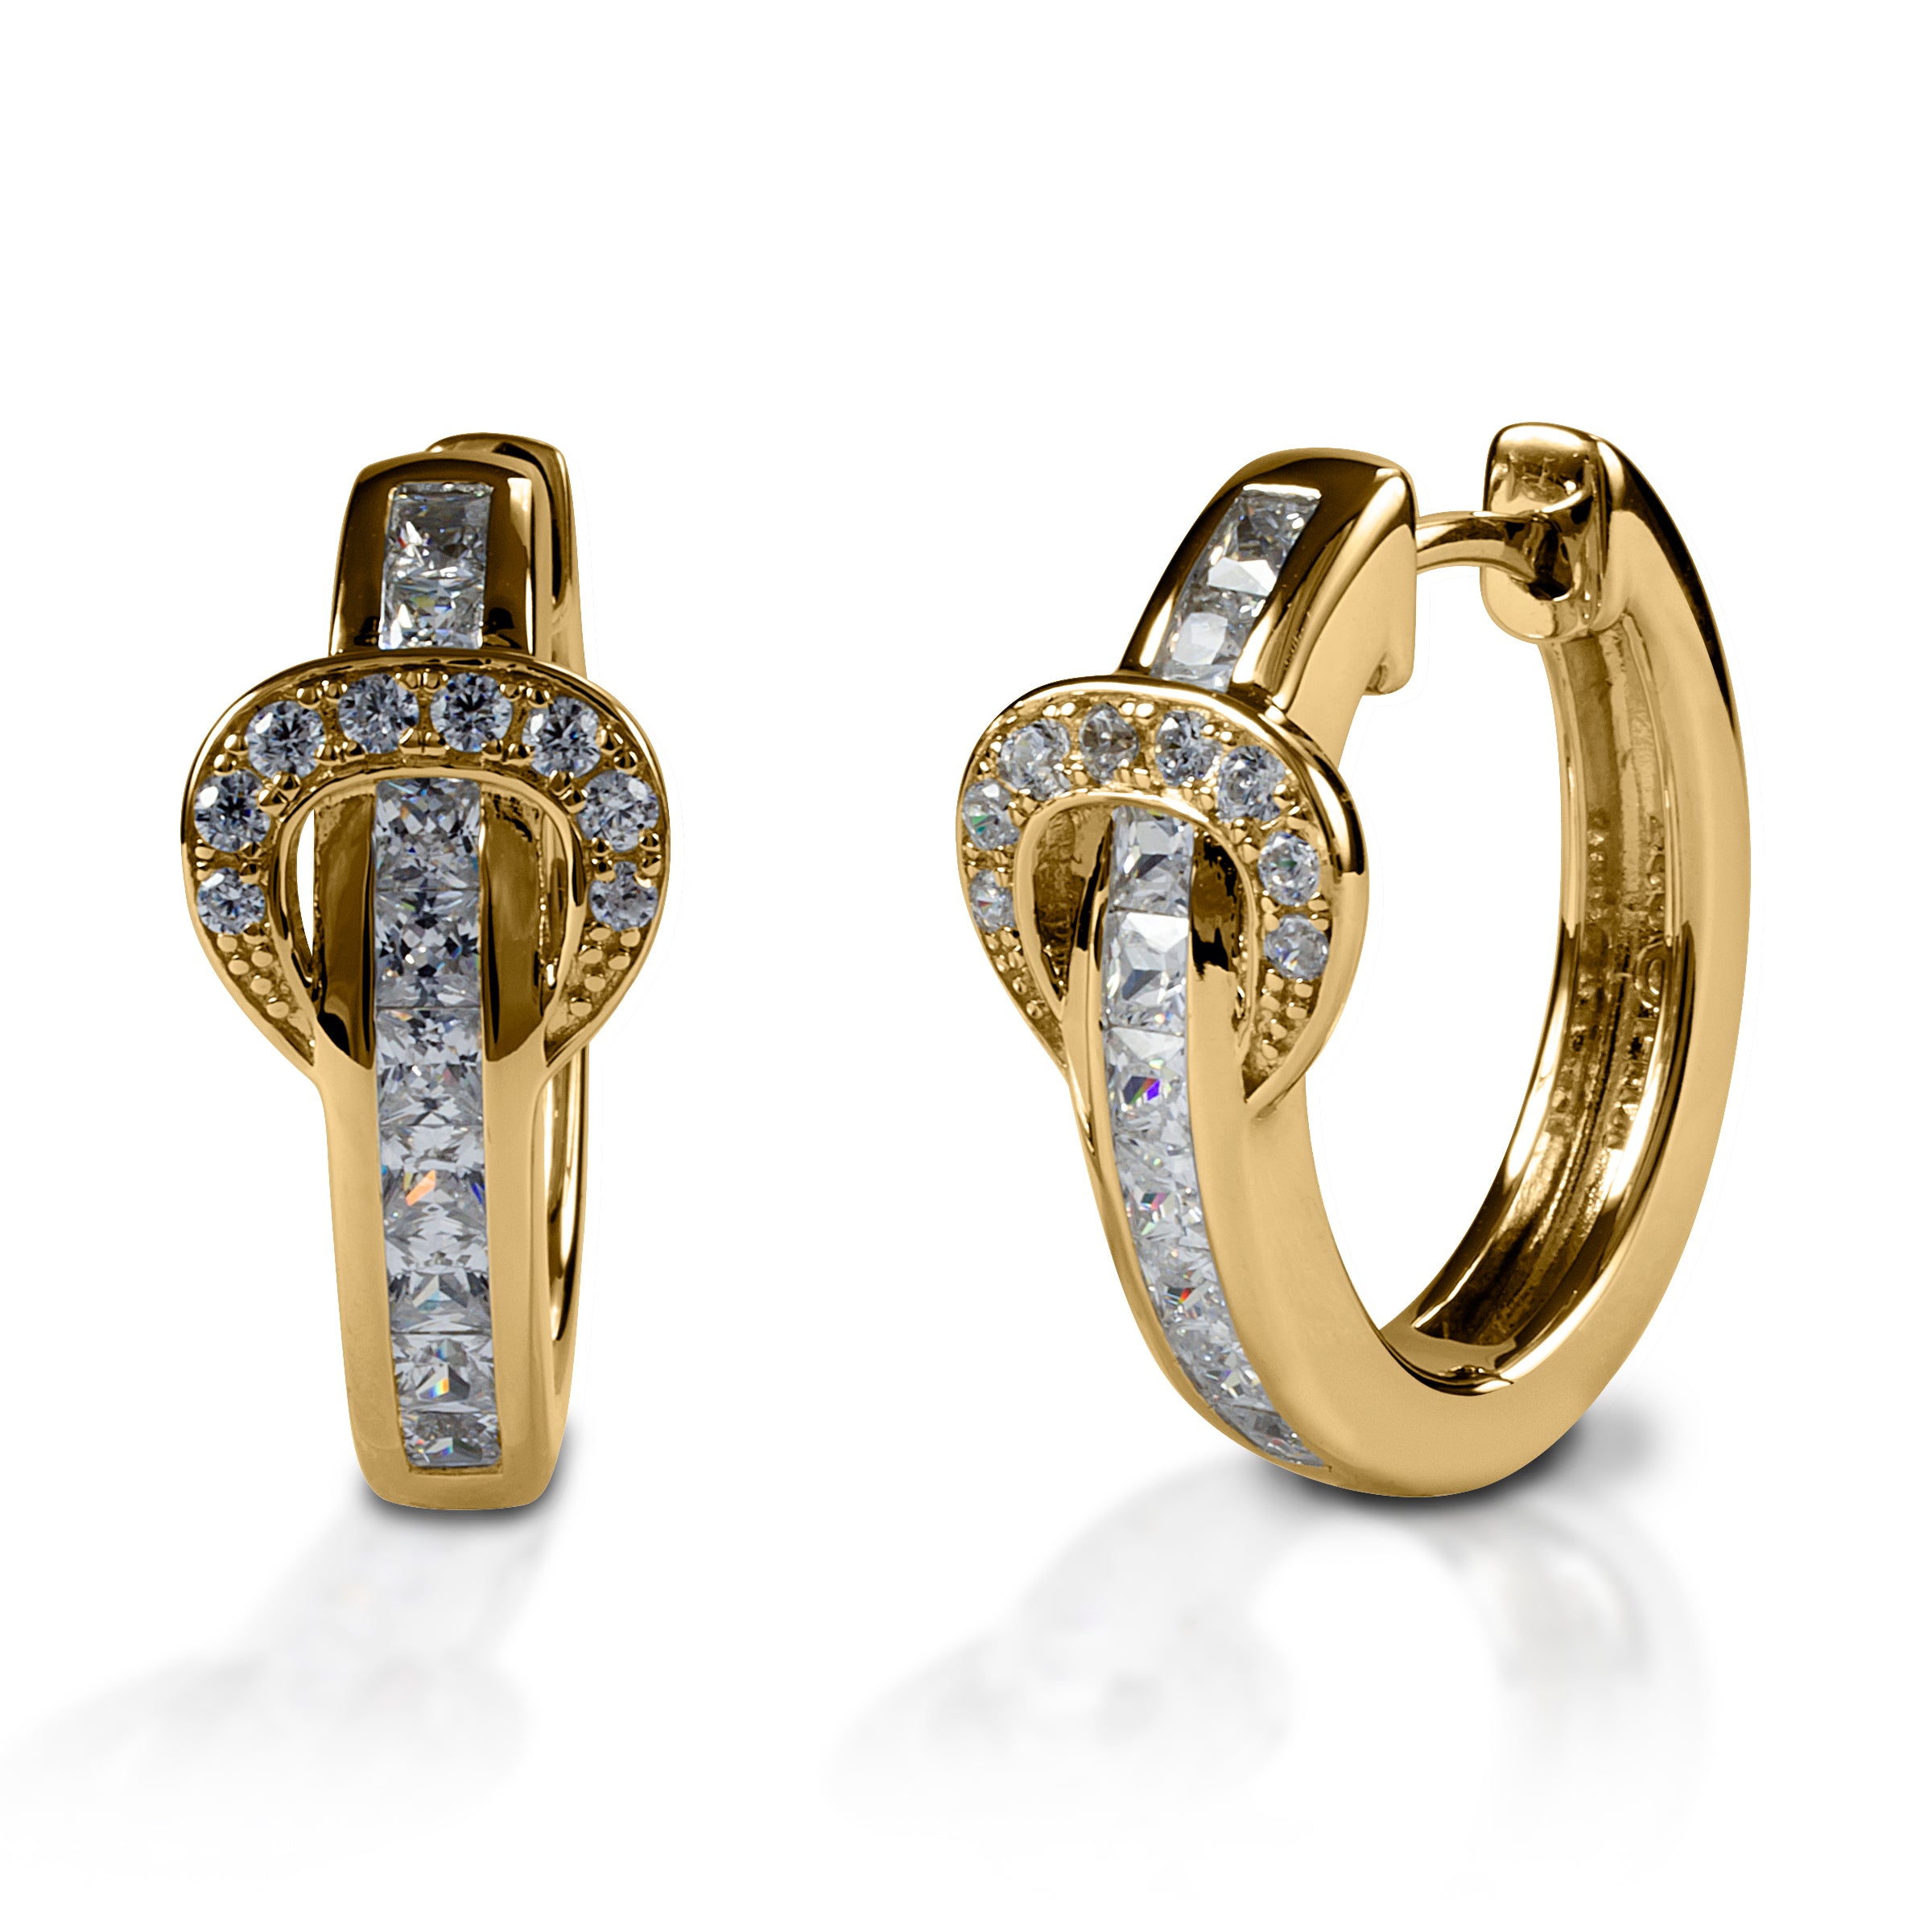 235-DER992 - 22K Gold Uncut Diamond Hoop Earrings With Pearls & Japanese  Culture Pearls | Uncut diamond, Cultured pearls, Bridal diamond jewellery